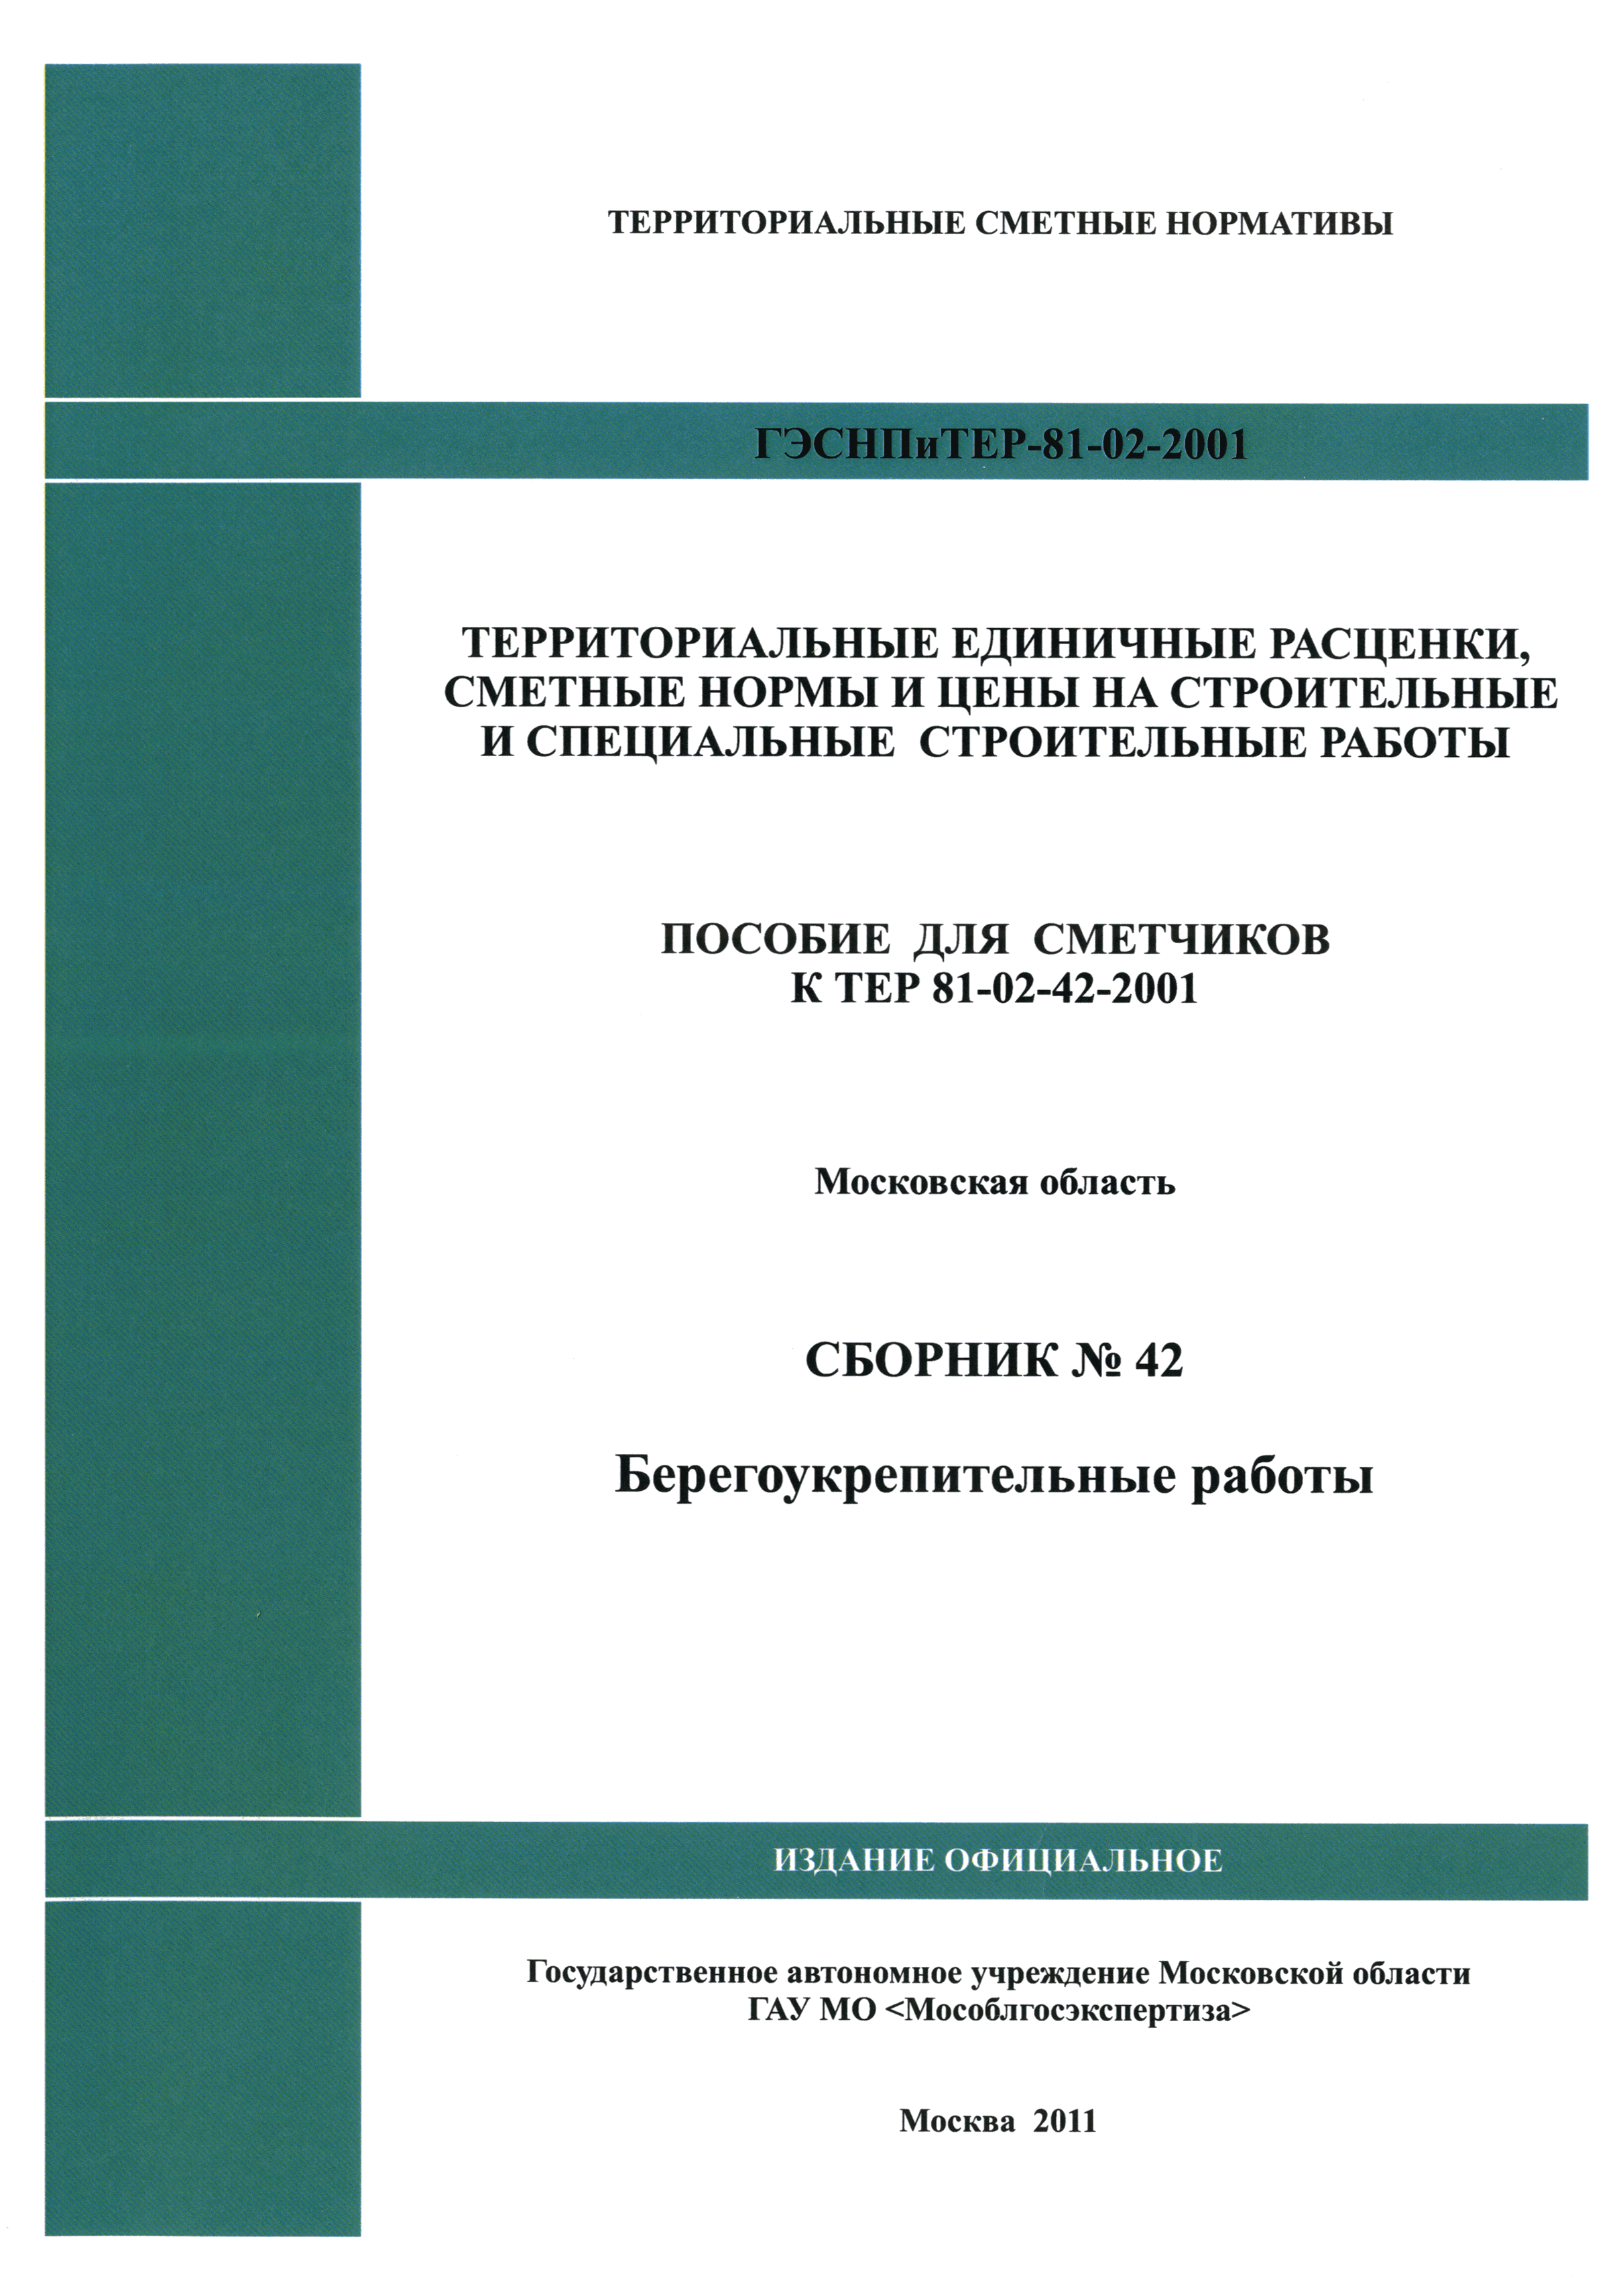 ГЭСНПиТЕР 2001-42 Московской области